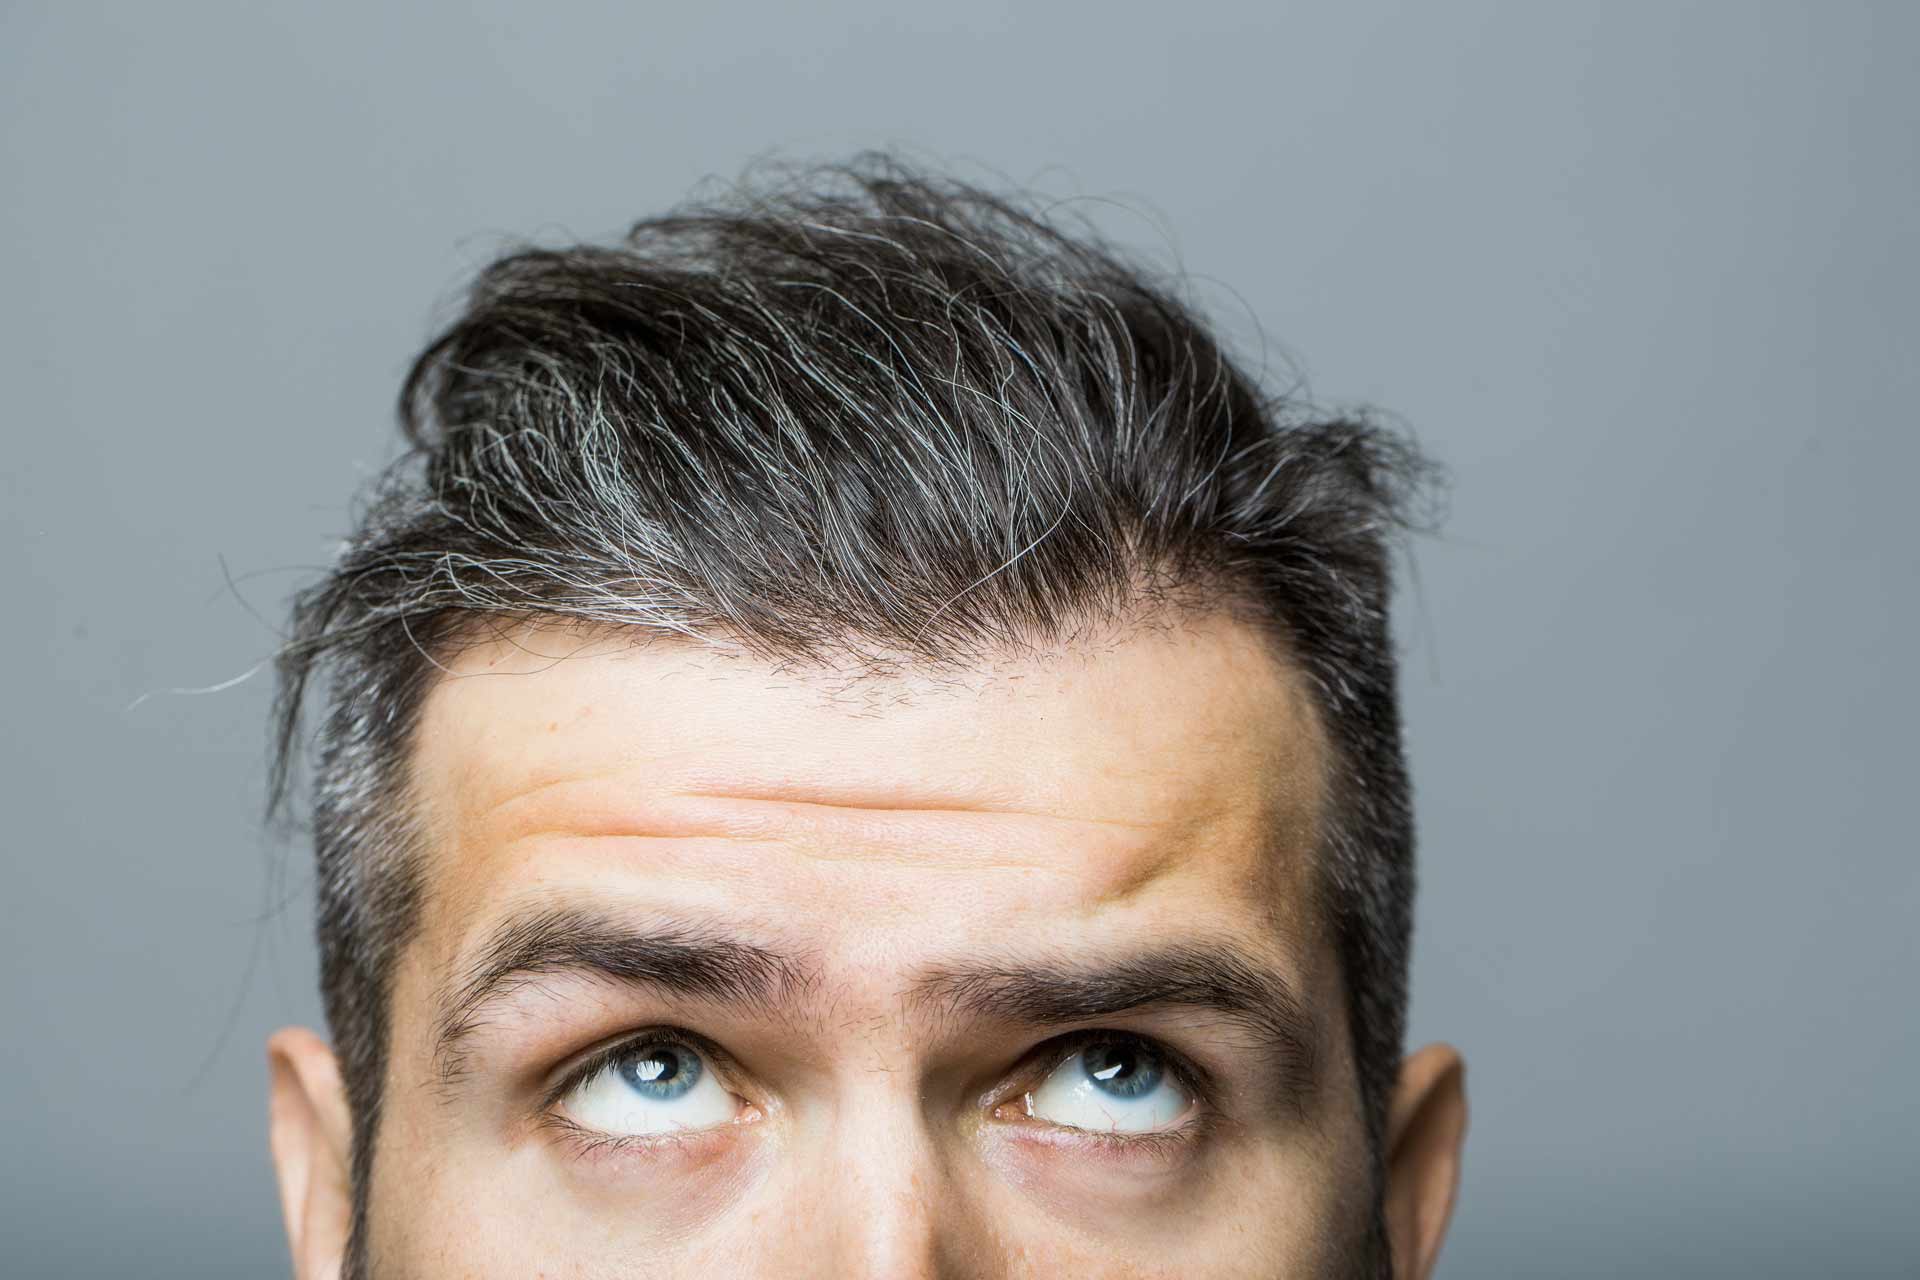 Άσπρα μαλλιά; Δε φταίει μόνο η ηλικία, φταίει και το στρες | IQ Skin Clinics